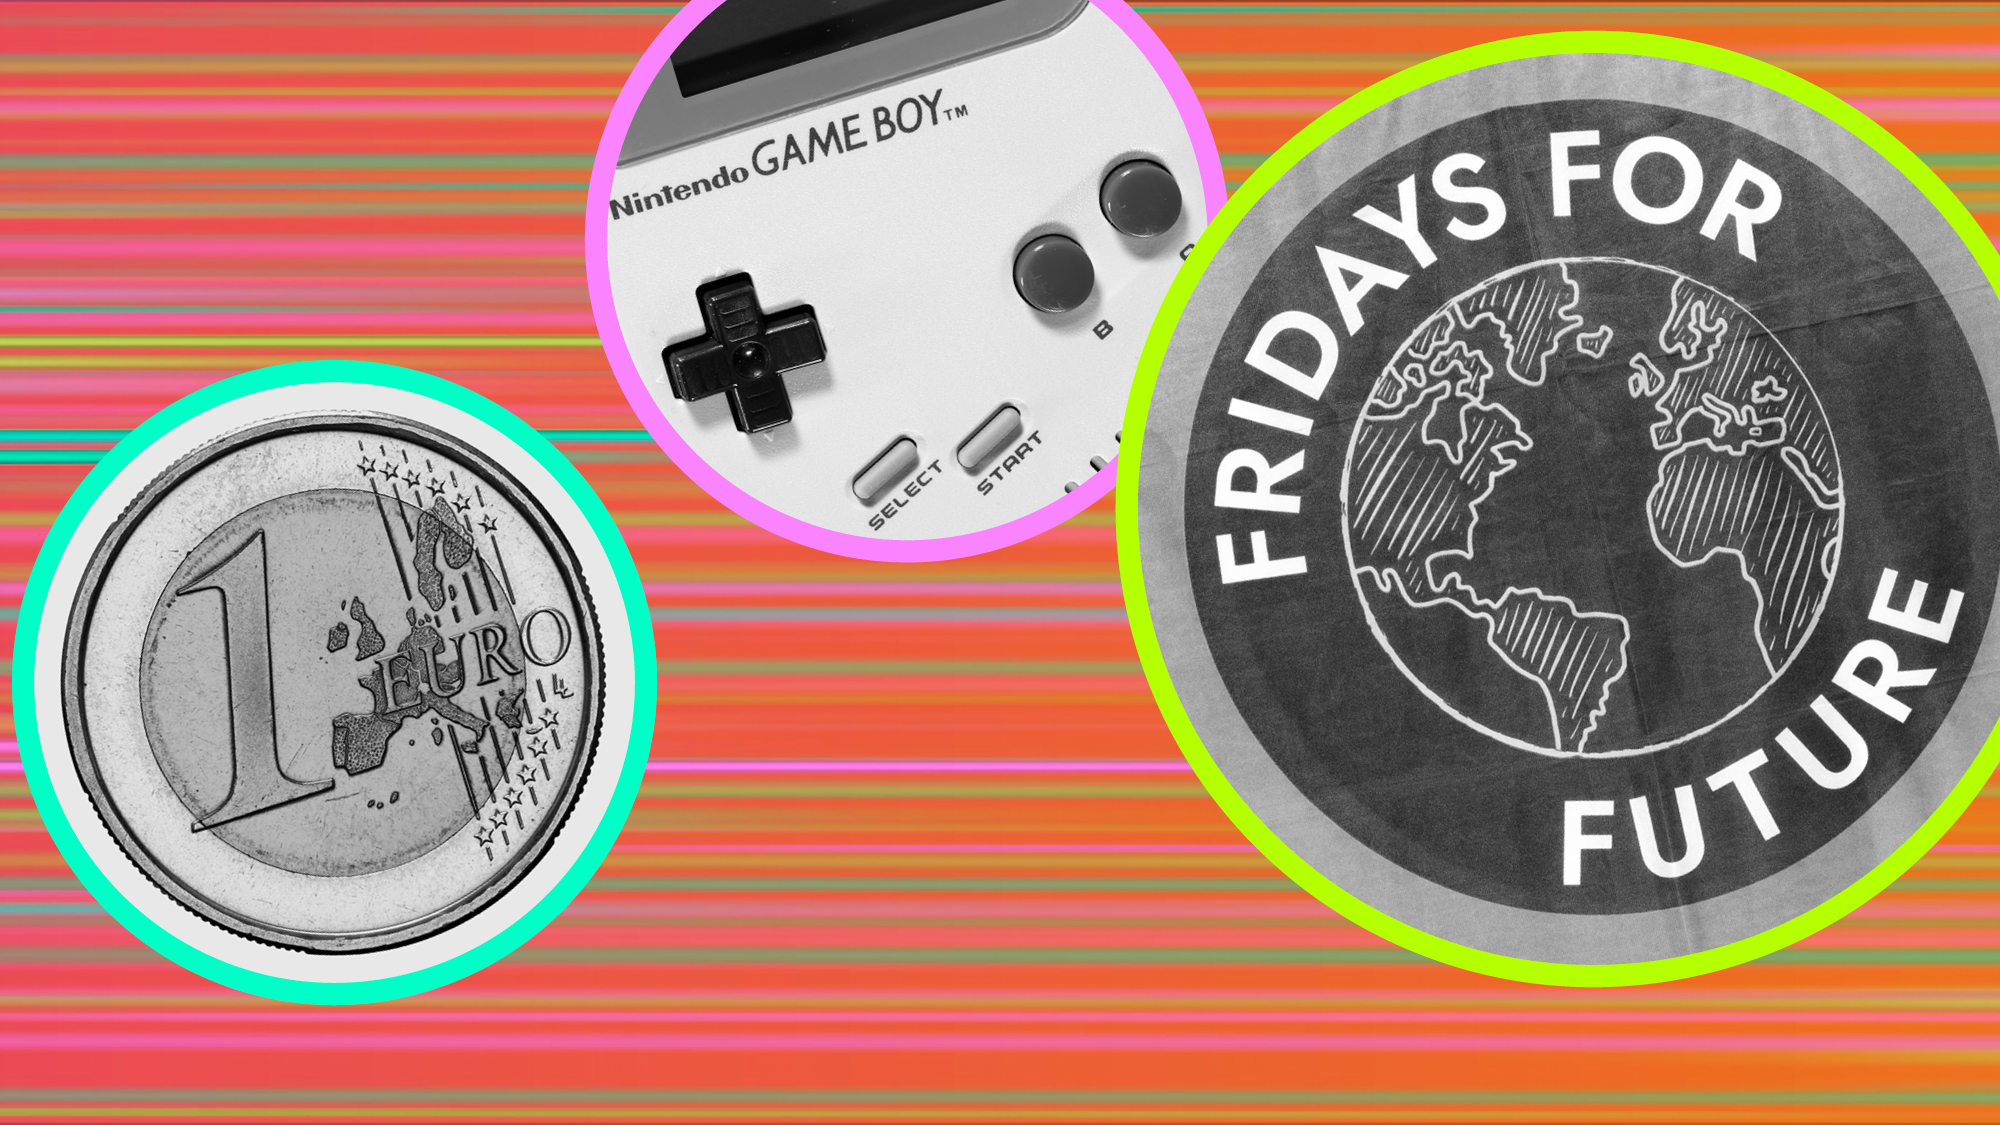 Grafik mit dem Foto eines Euros, einer Nahaufnahme der Steuerungselemente eines Nintendo Game Boy und einem Logo von Fridays for Future.